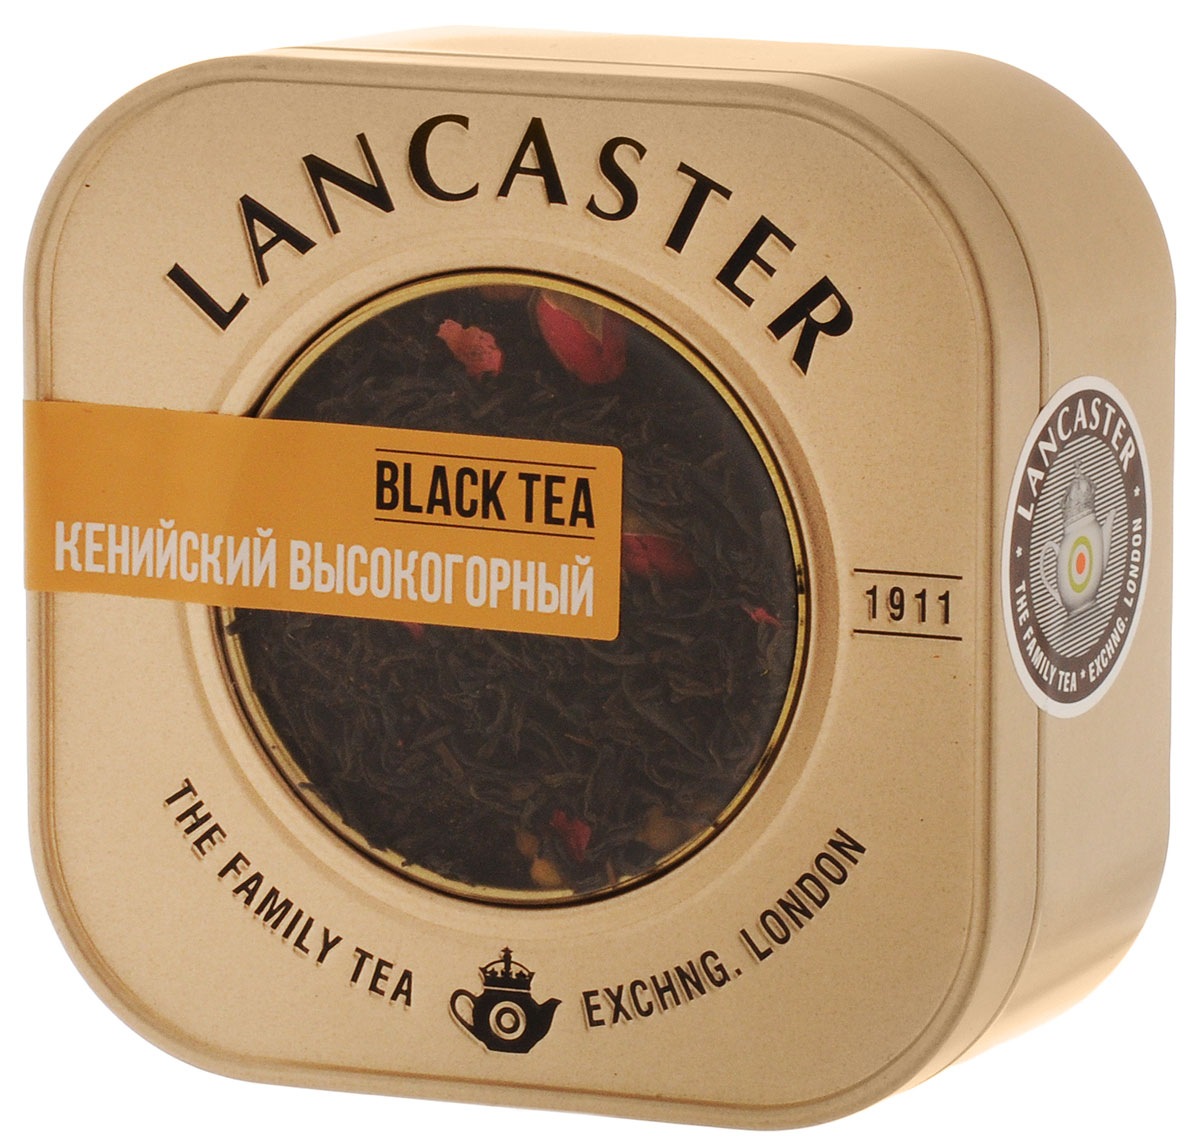 Фото Lancaster Кенийский высокогорный черный листовой чай, 75 г. Купить  в РФ